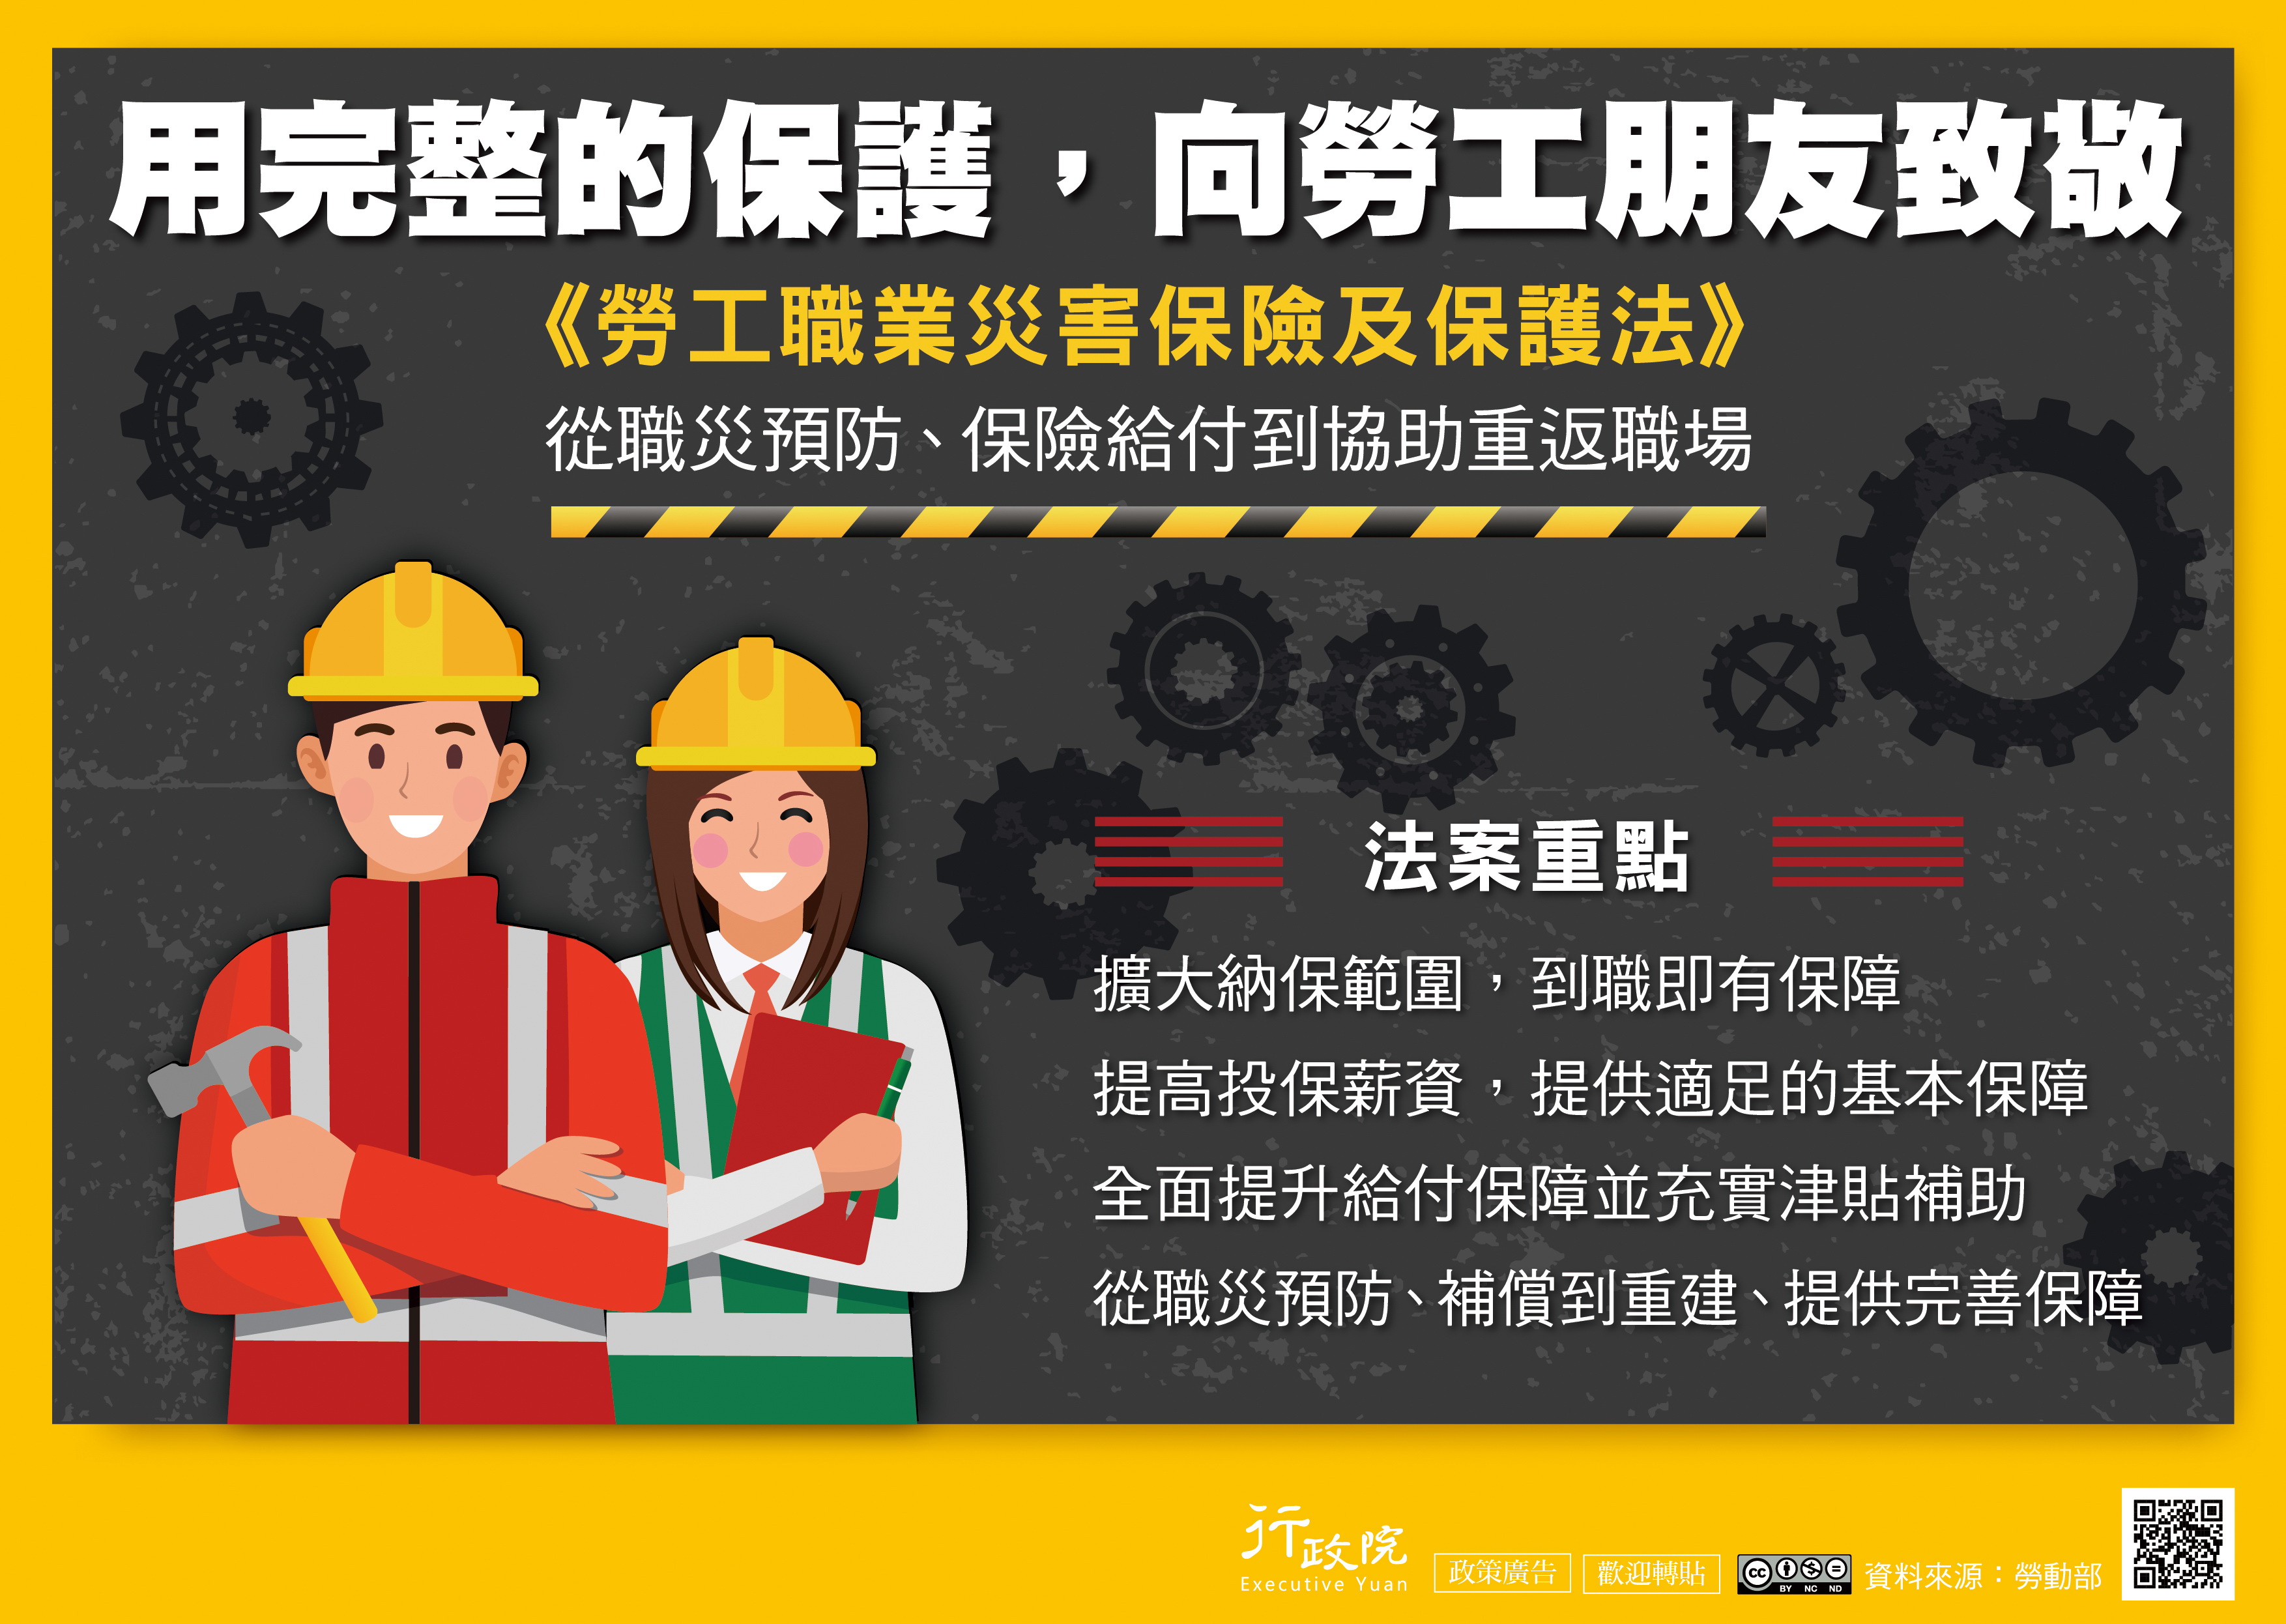 「勞工職業災害保險及保護法」政策推廣電子單張宣傳海報